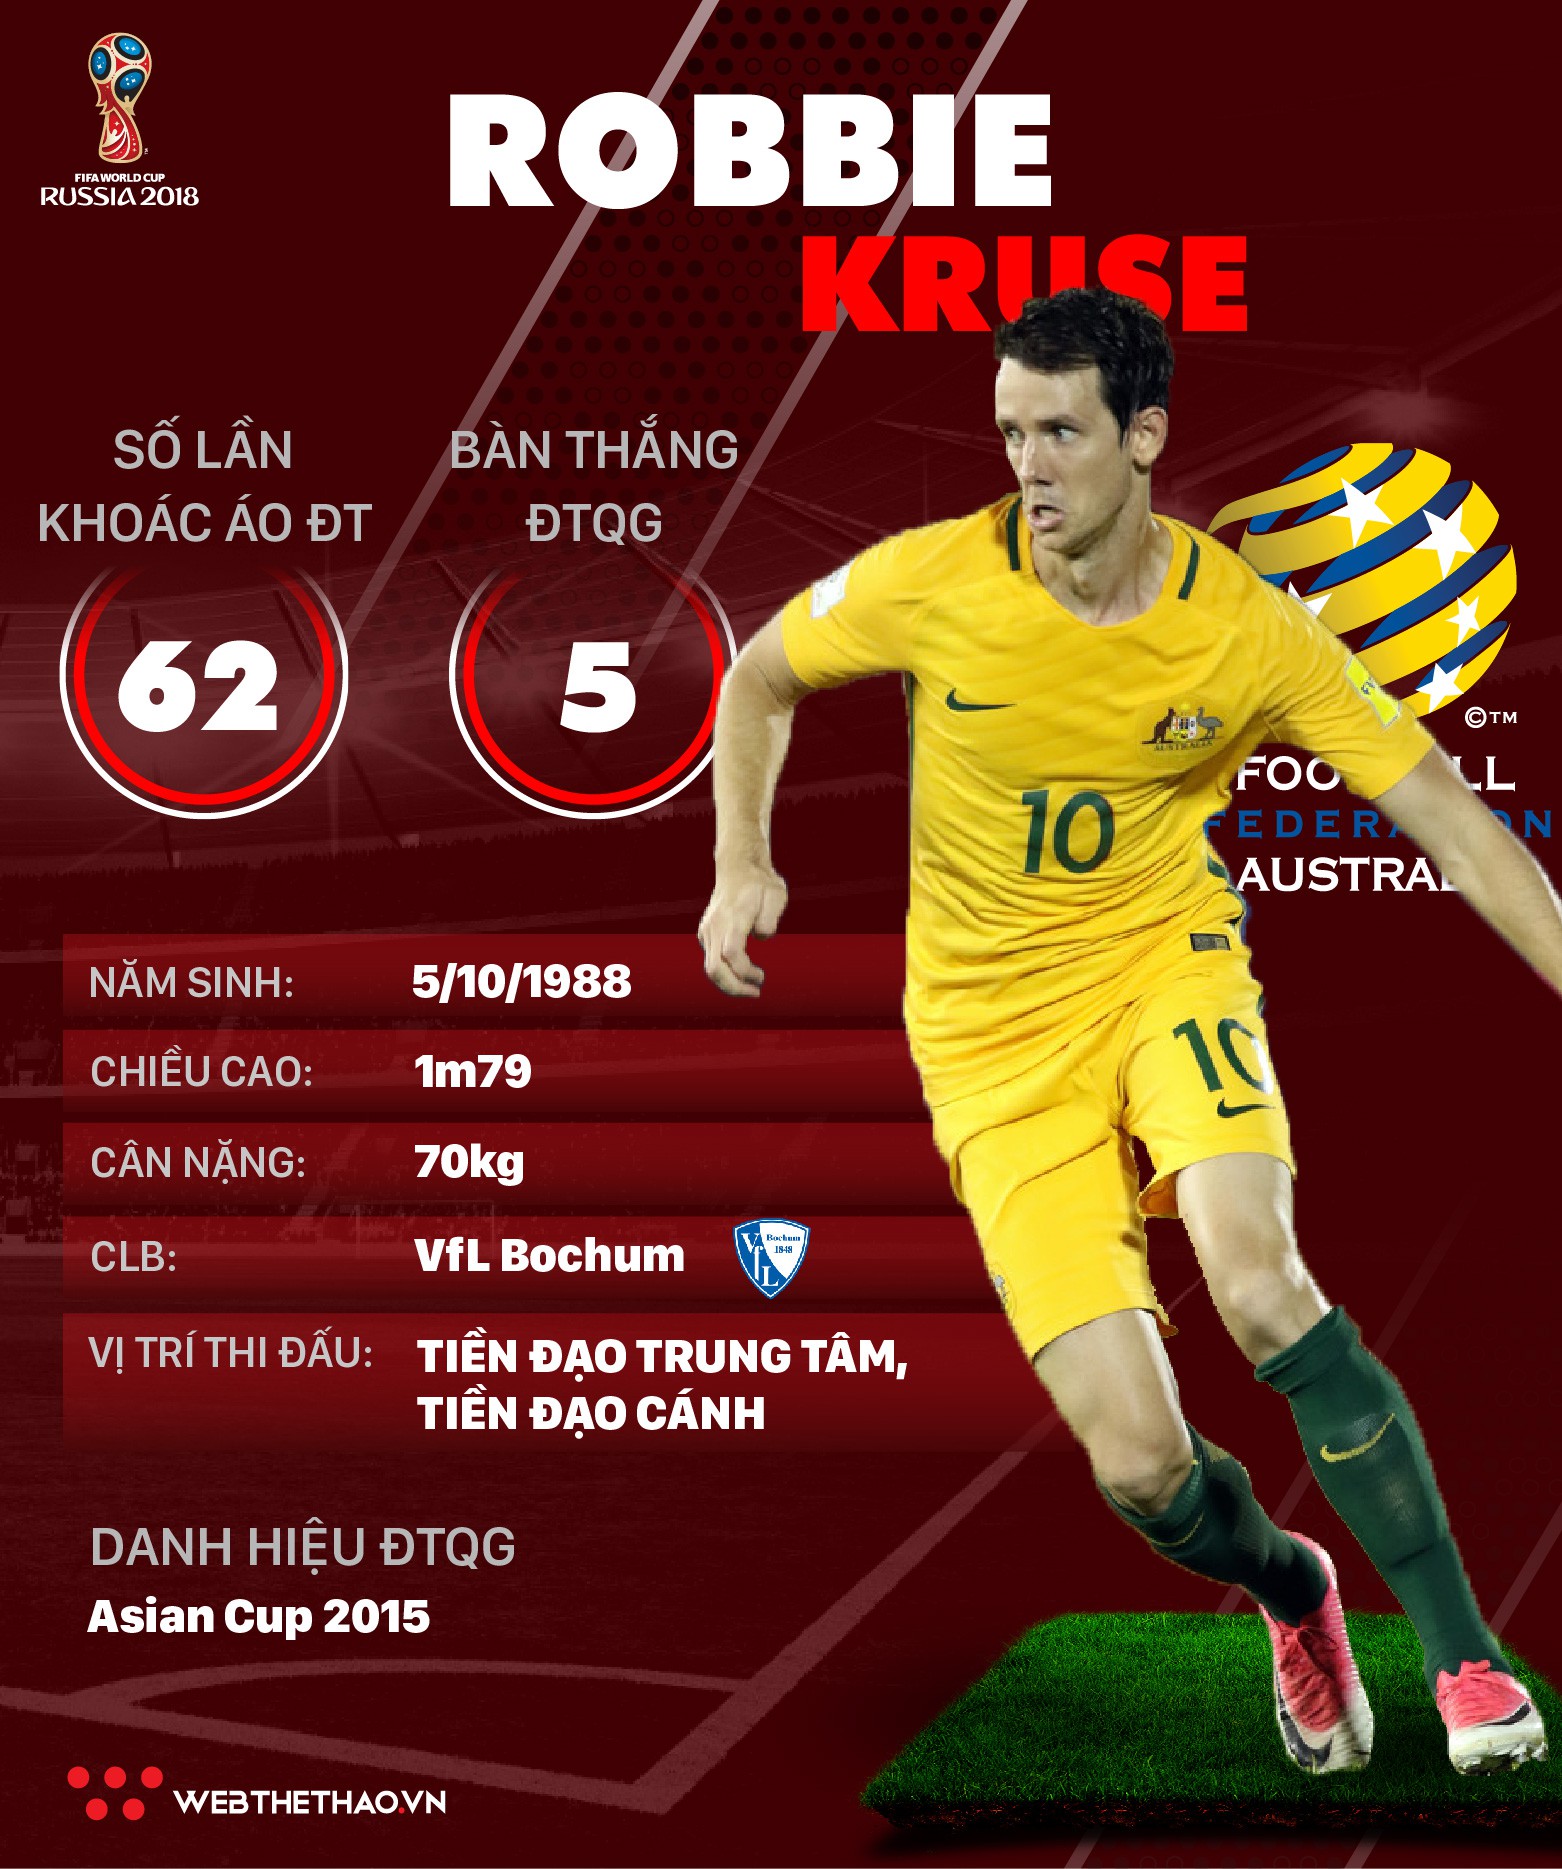 Thông tin cầu thủ Robbie Kruse của ĐT Australia dự World Cup 2018 - Ảnh 1.